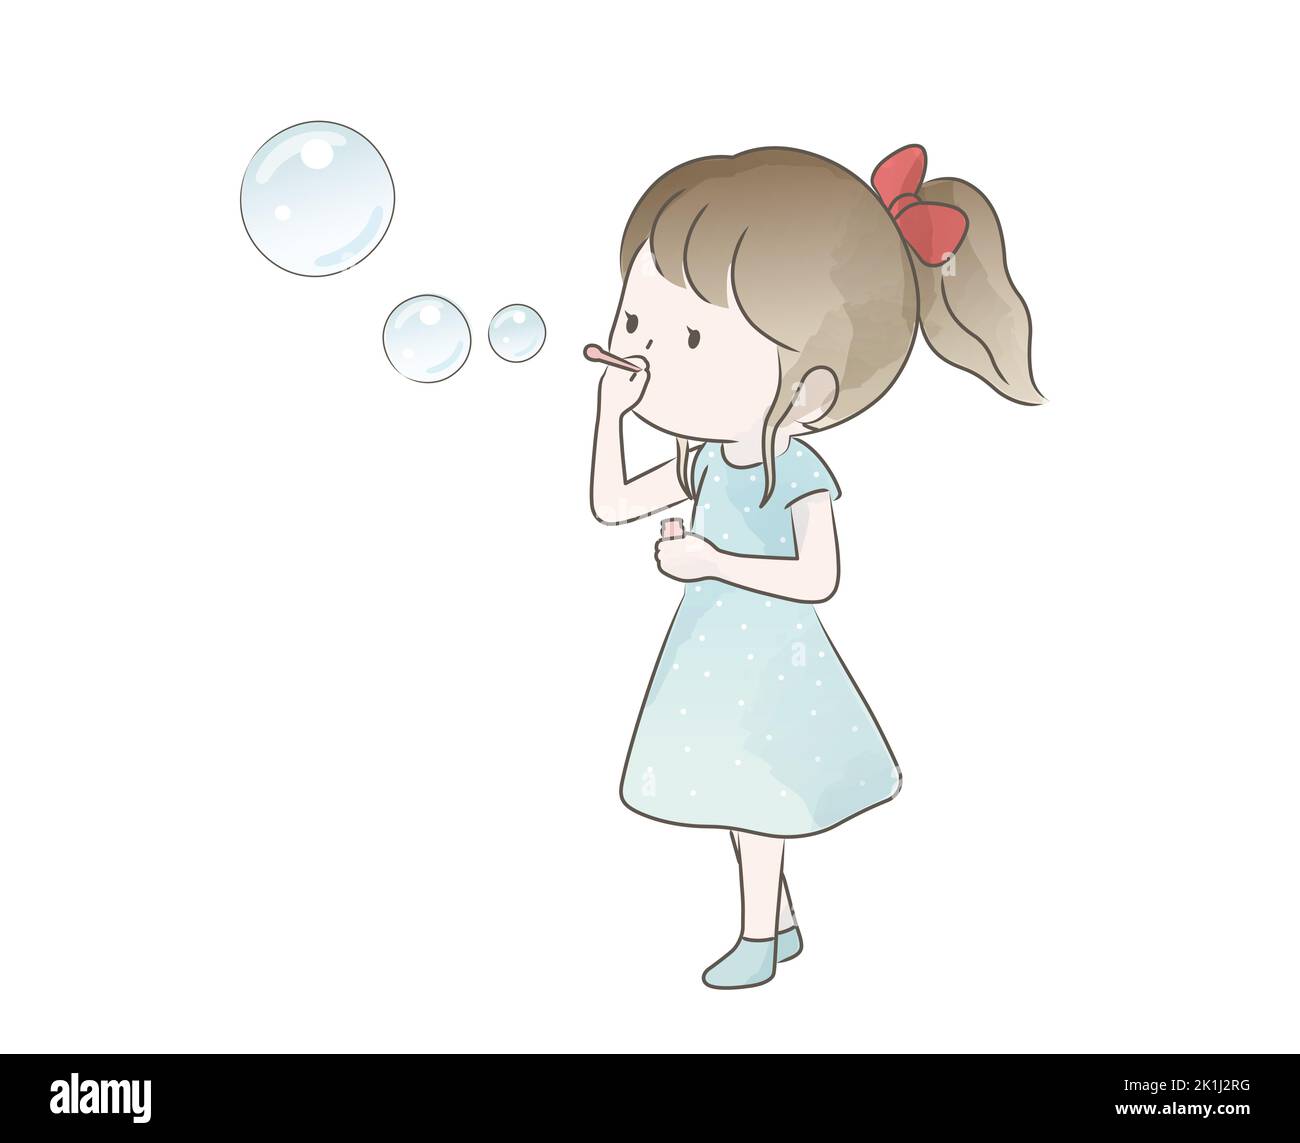 Aquarelle Cute Girl Blowing Bubbles isolé sur Un fond blanc. Illustration naïve de vecteur. Illustration de Vecteur